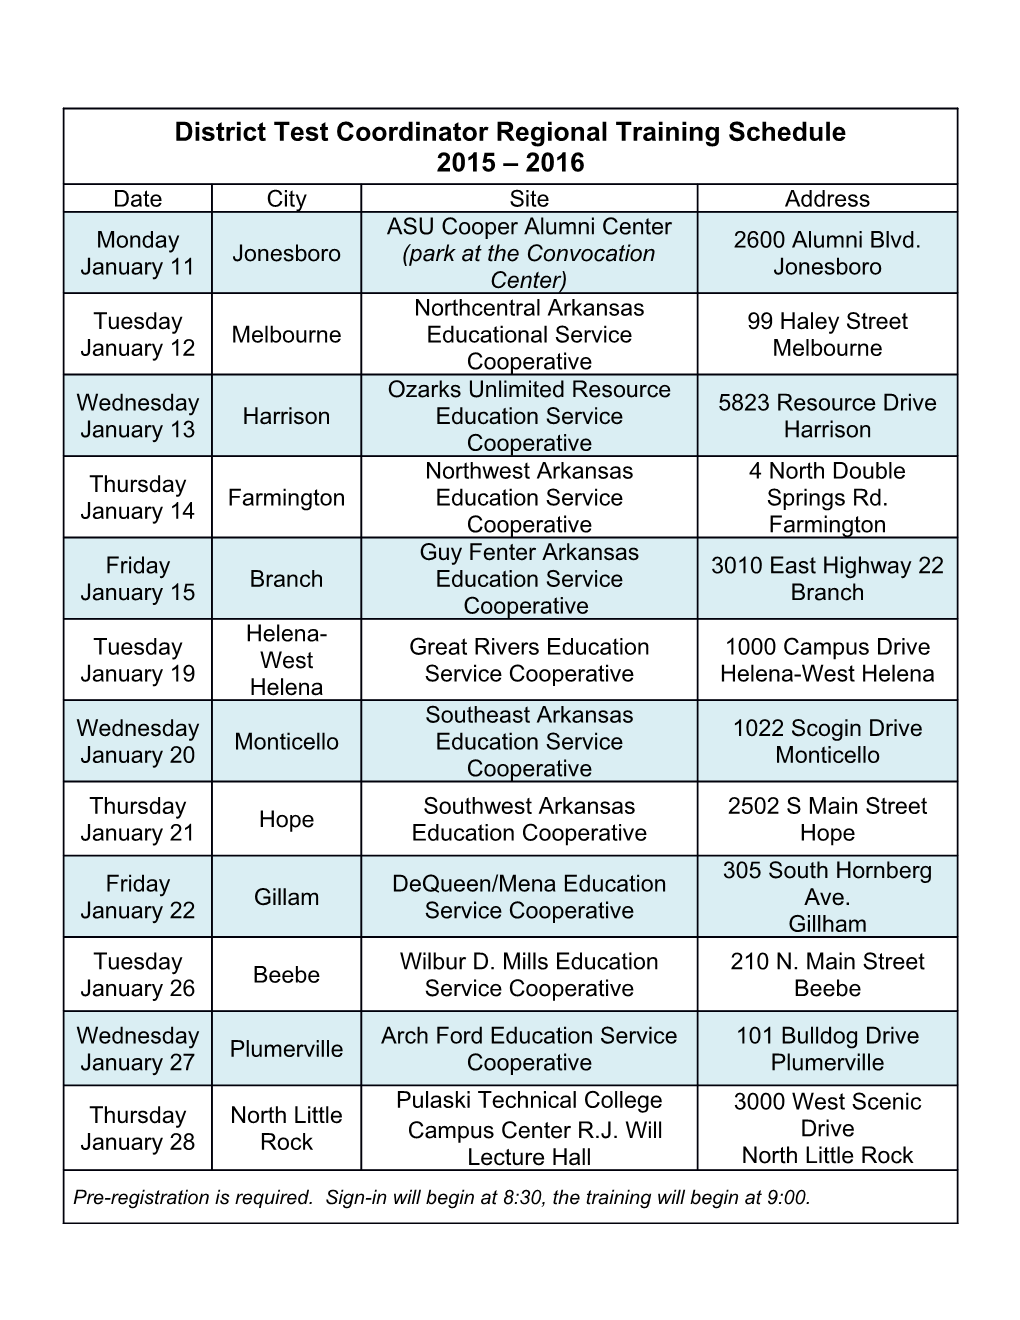 District Test Coordinator Regional Training Schedule 2015 2016